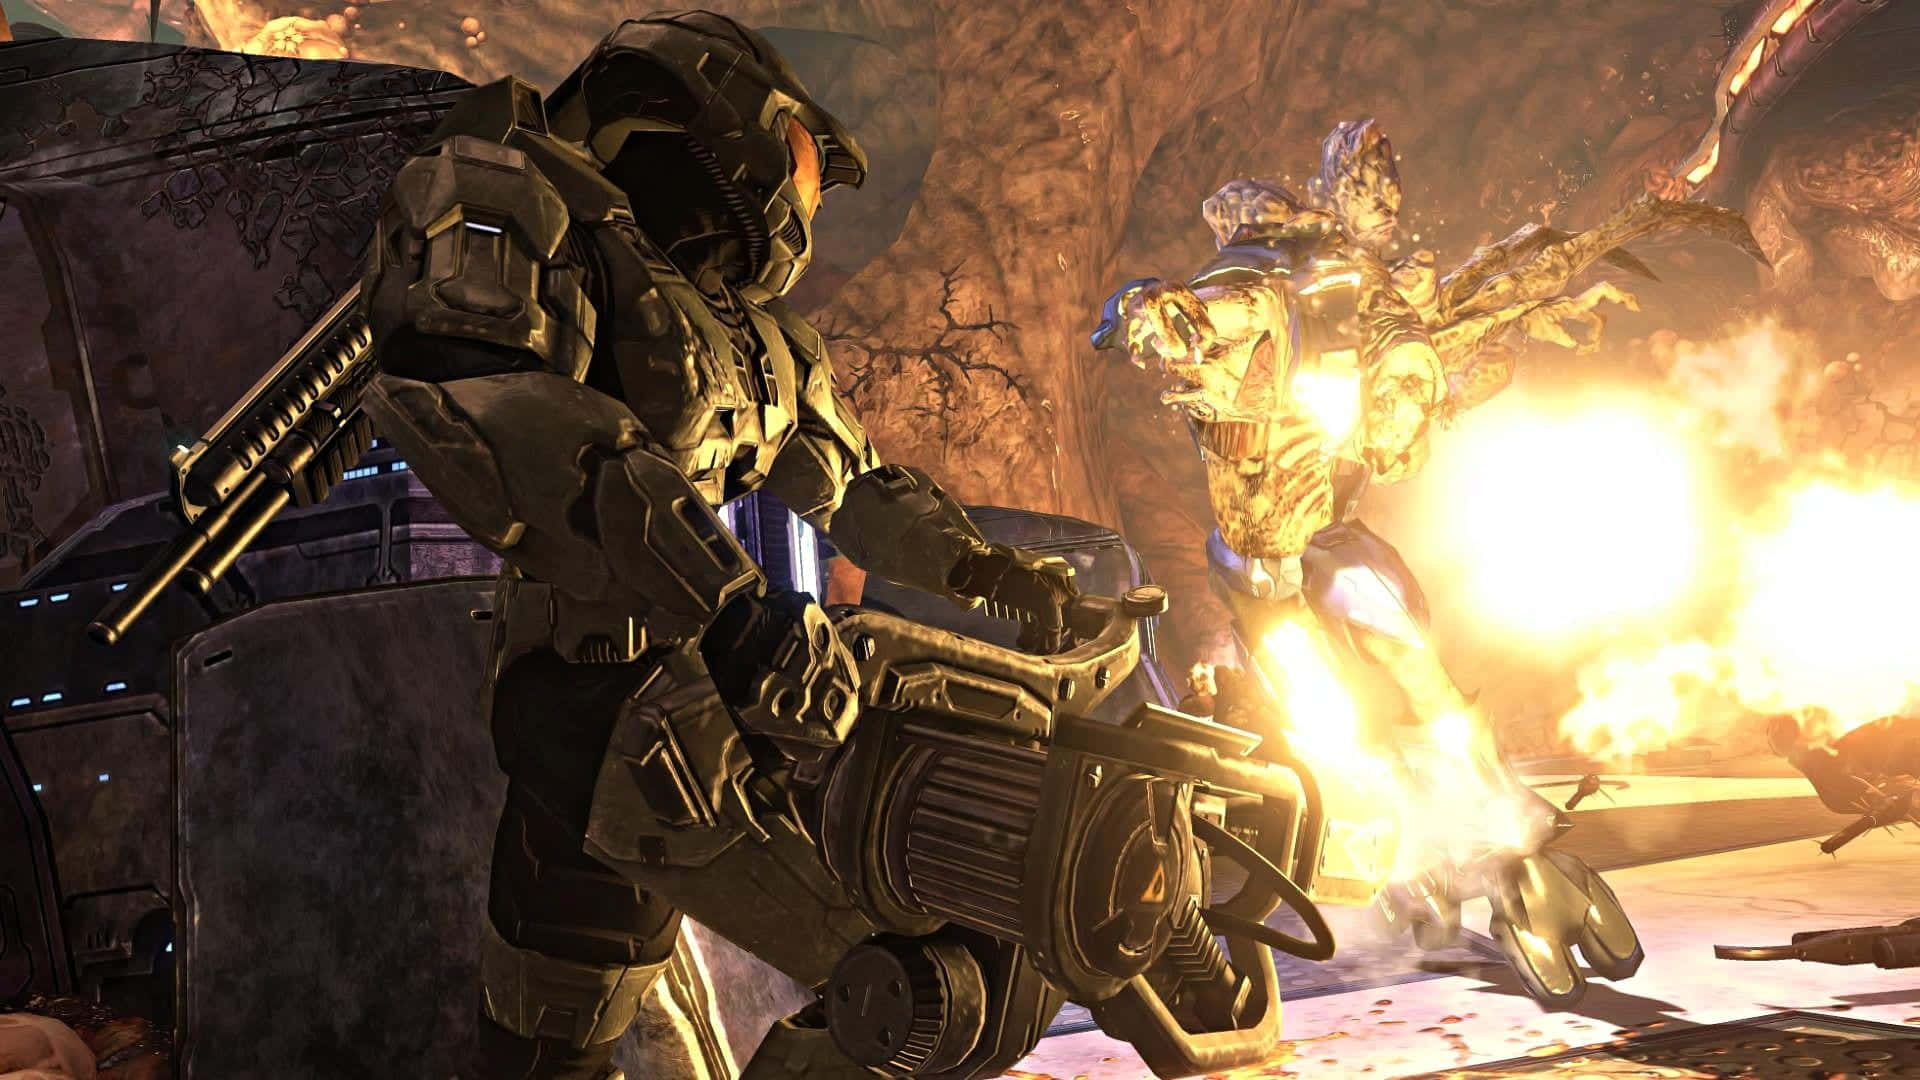 Intensaescena De Batalla, Que Muestra A Un Soldado Espartano Luchando Contra El Flood En Halo. Fondo de pantalla